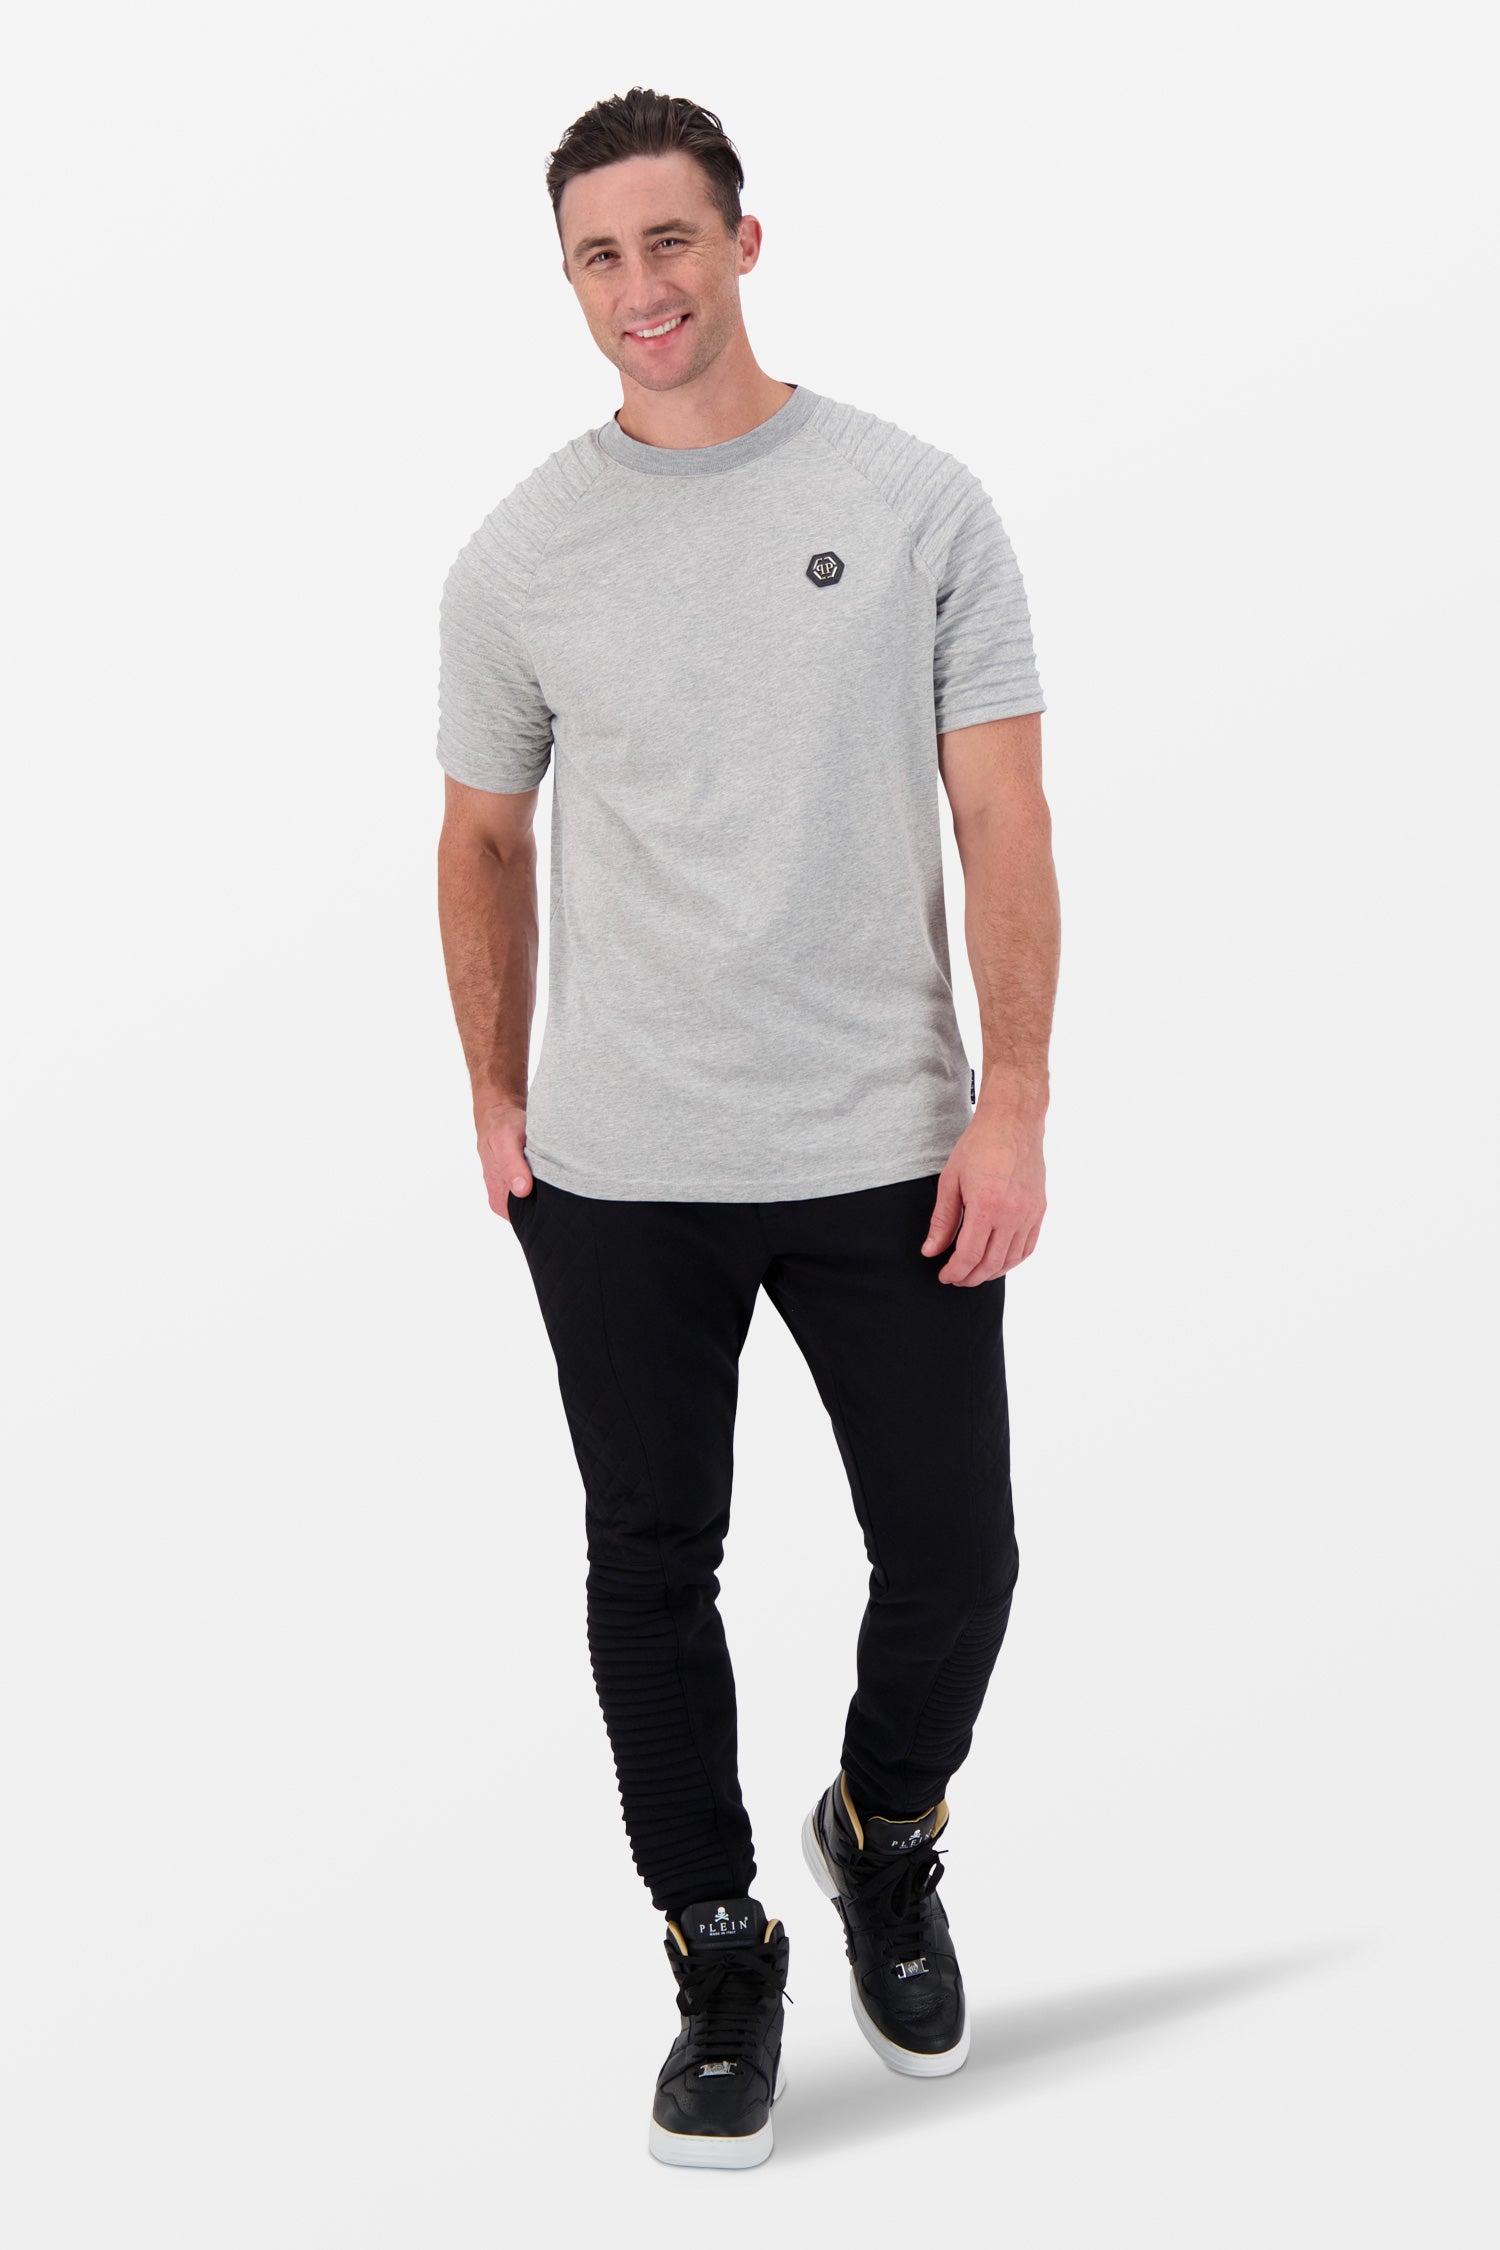 Philipp Plein Grey Round Neck T-Shirt